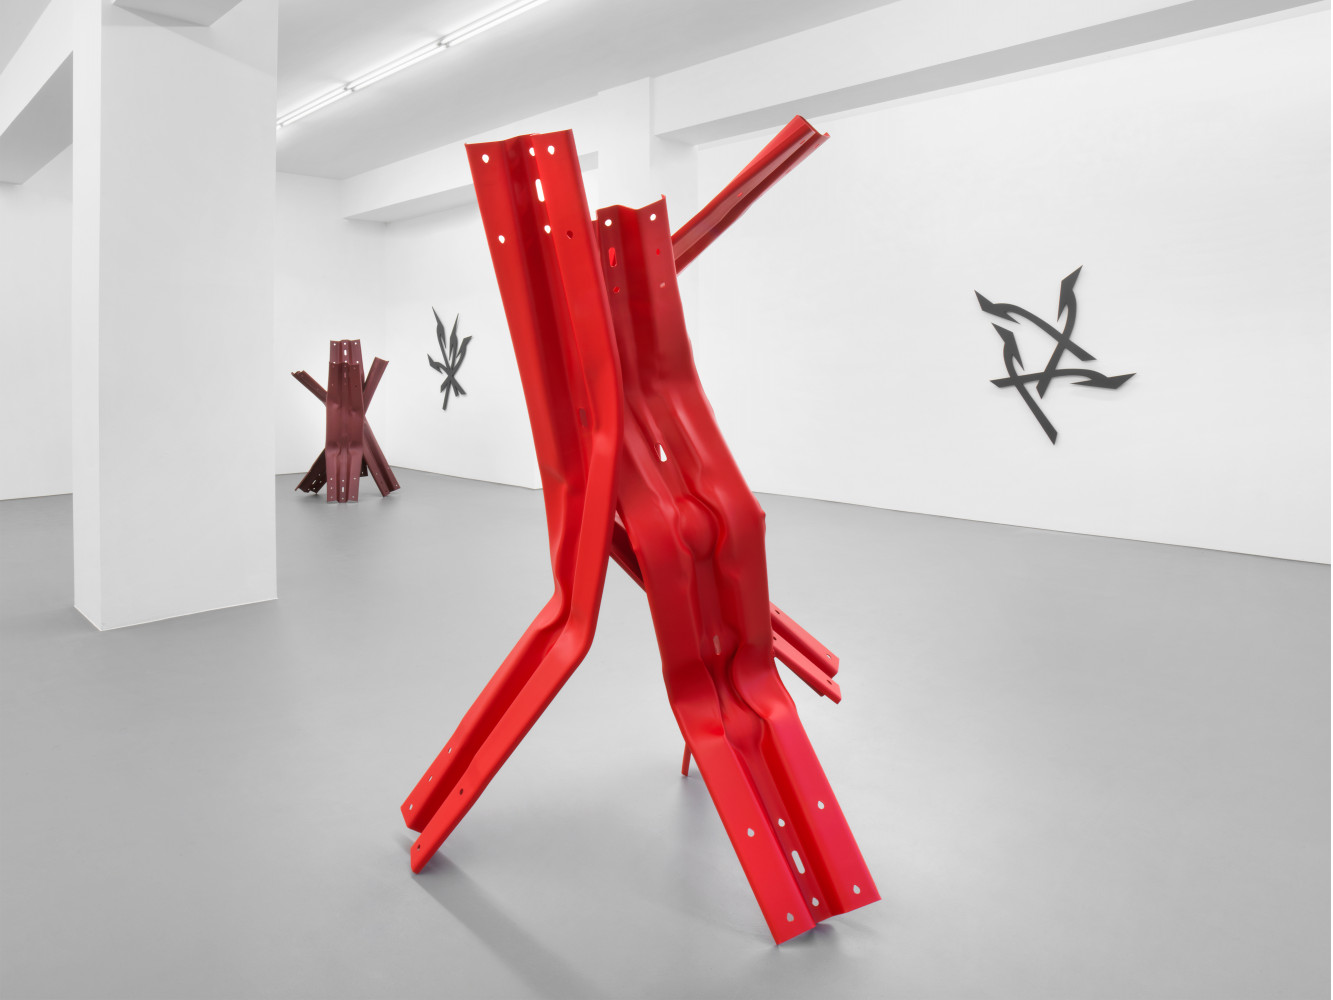 Bettina Pousttchi, ‘Directions’, Installationsansicht, Buchmann Galerie, 2021